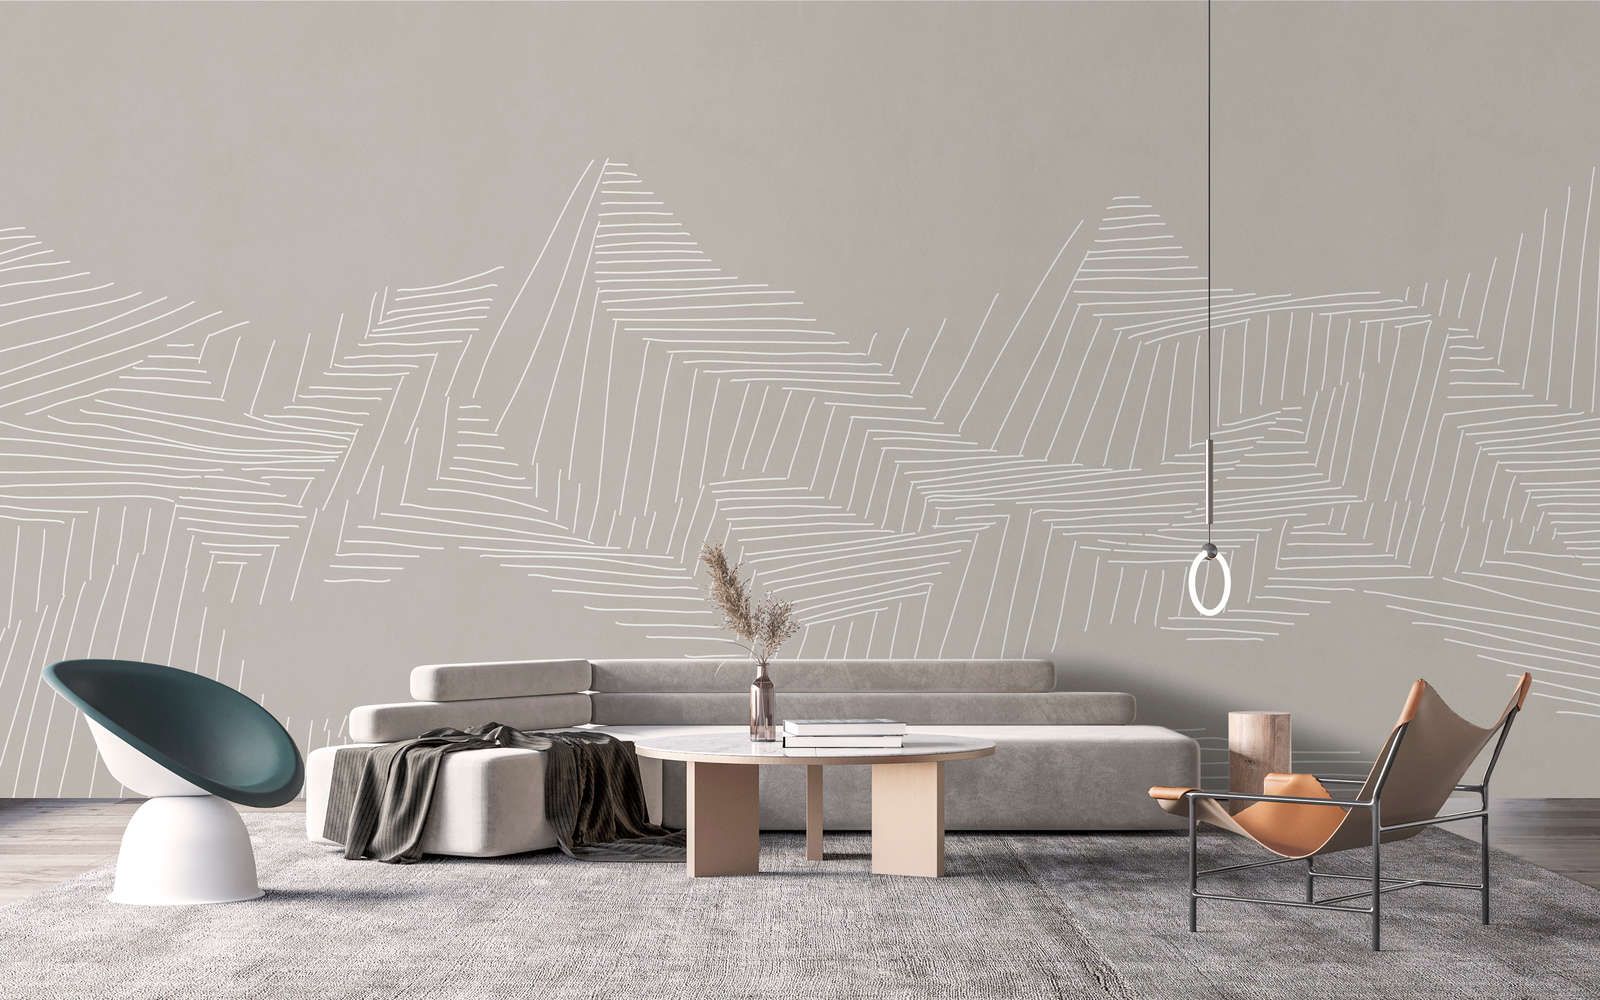             Digital behang »victor« - Berglandschap met lijnenpatroon - Grijs | Licht structuurvlies
        